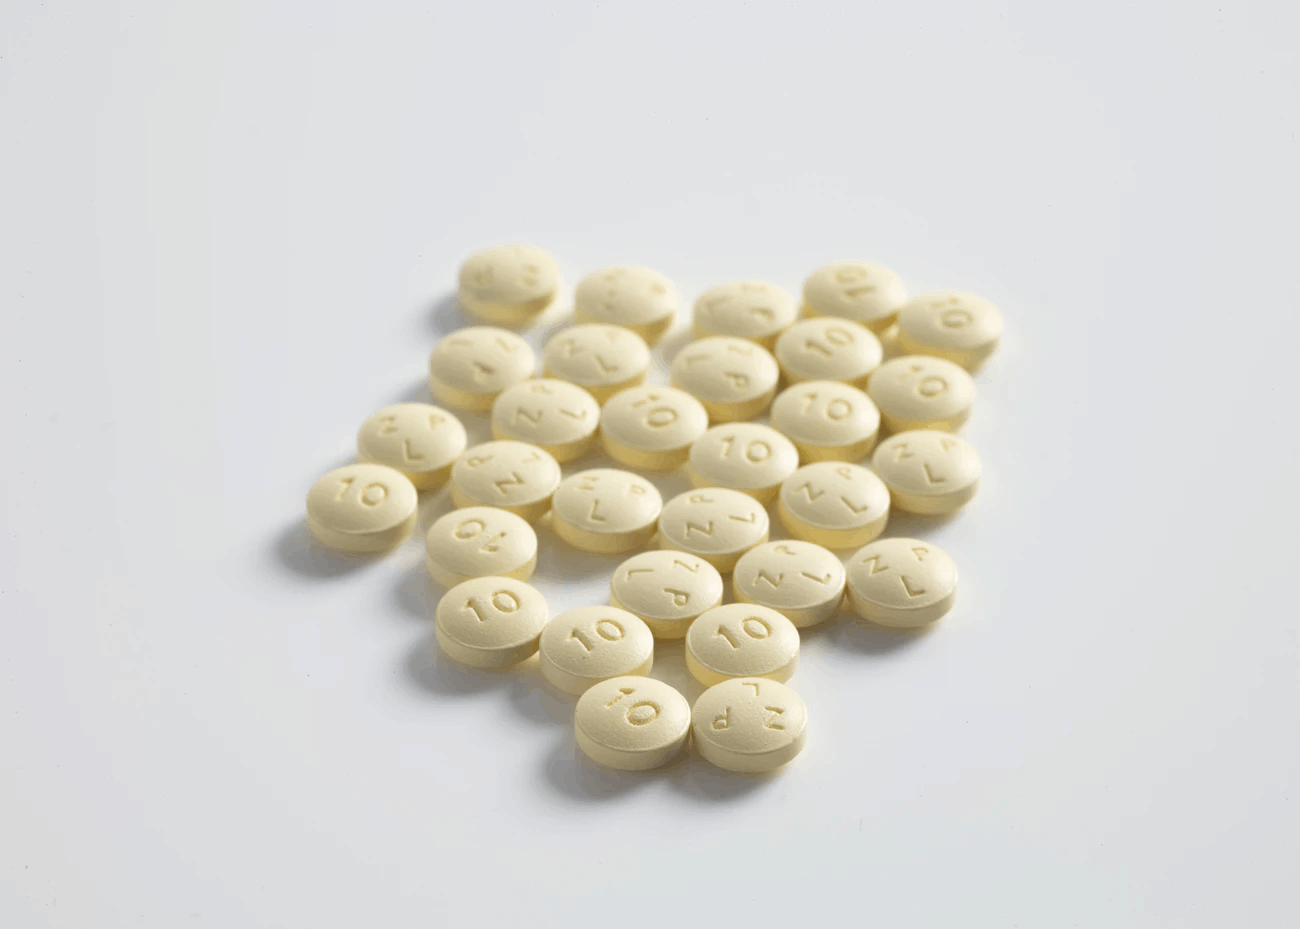 CBD pills